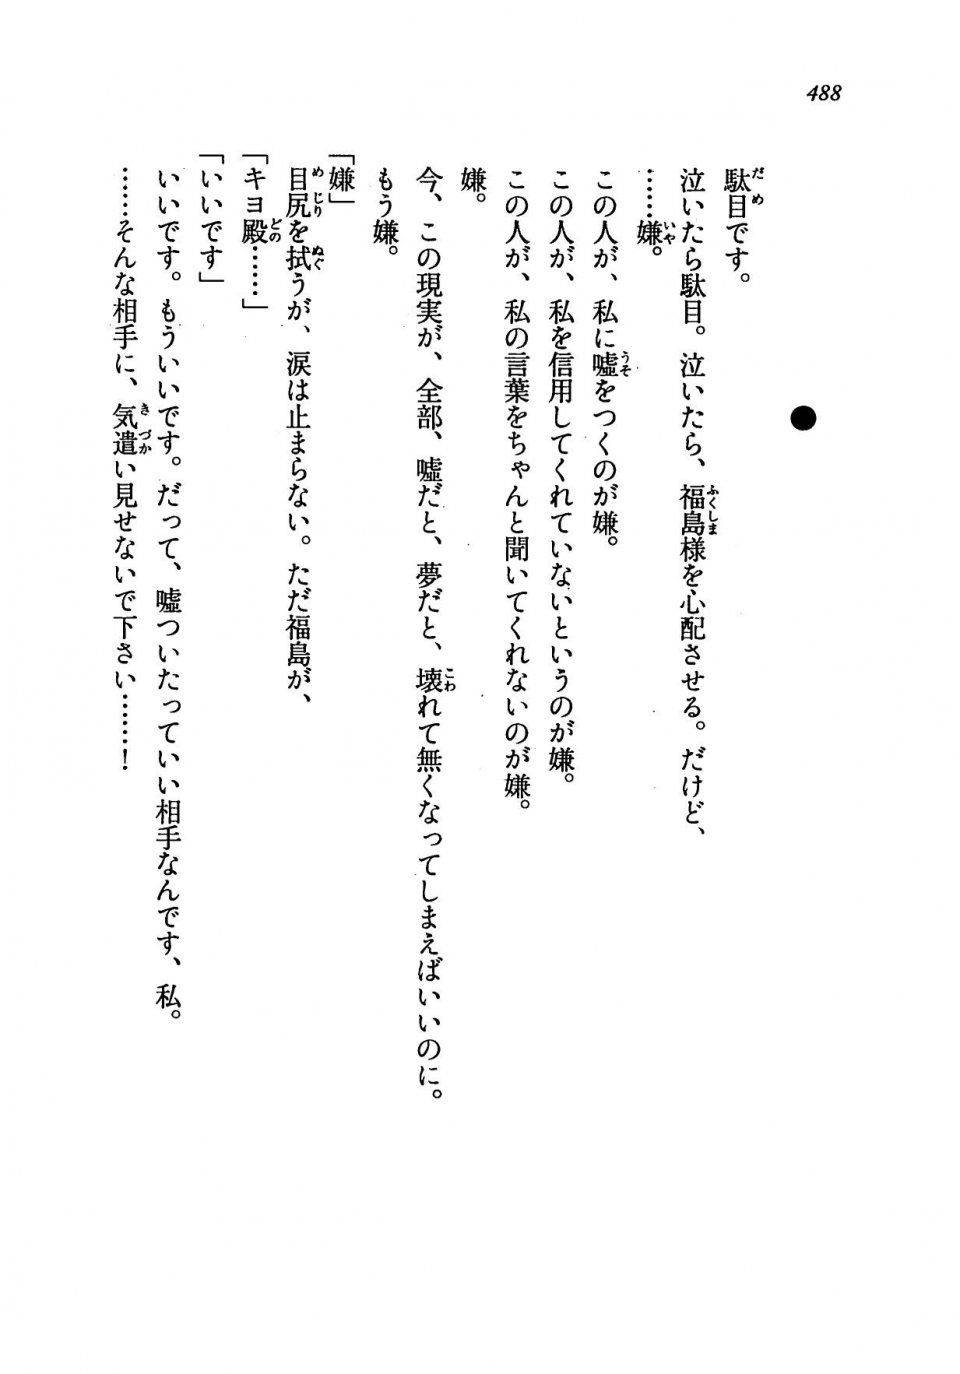 Kyoukai Senjou no Horizon LN Vol 19(8A) - Photo #488